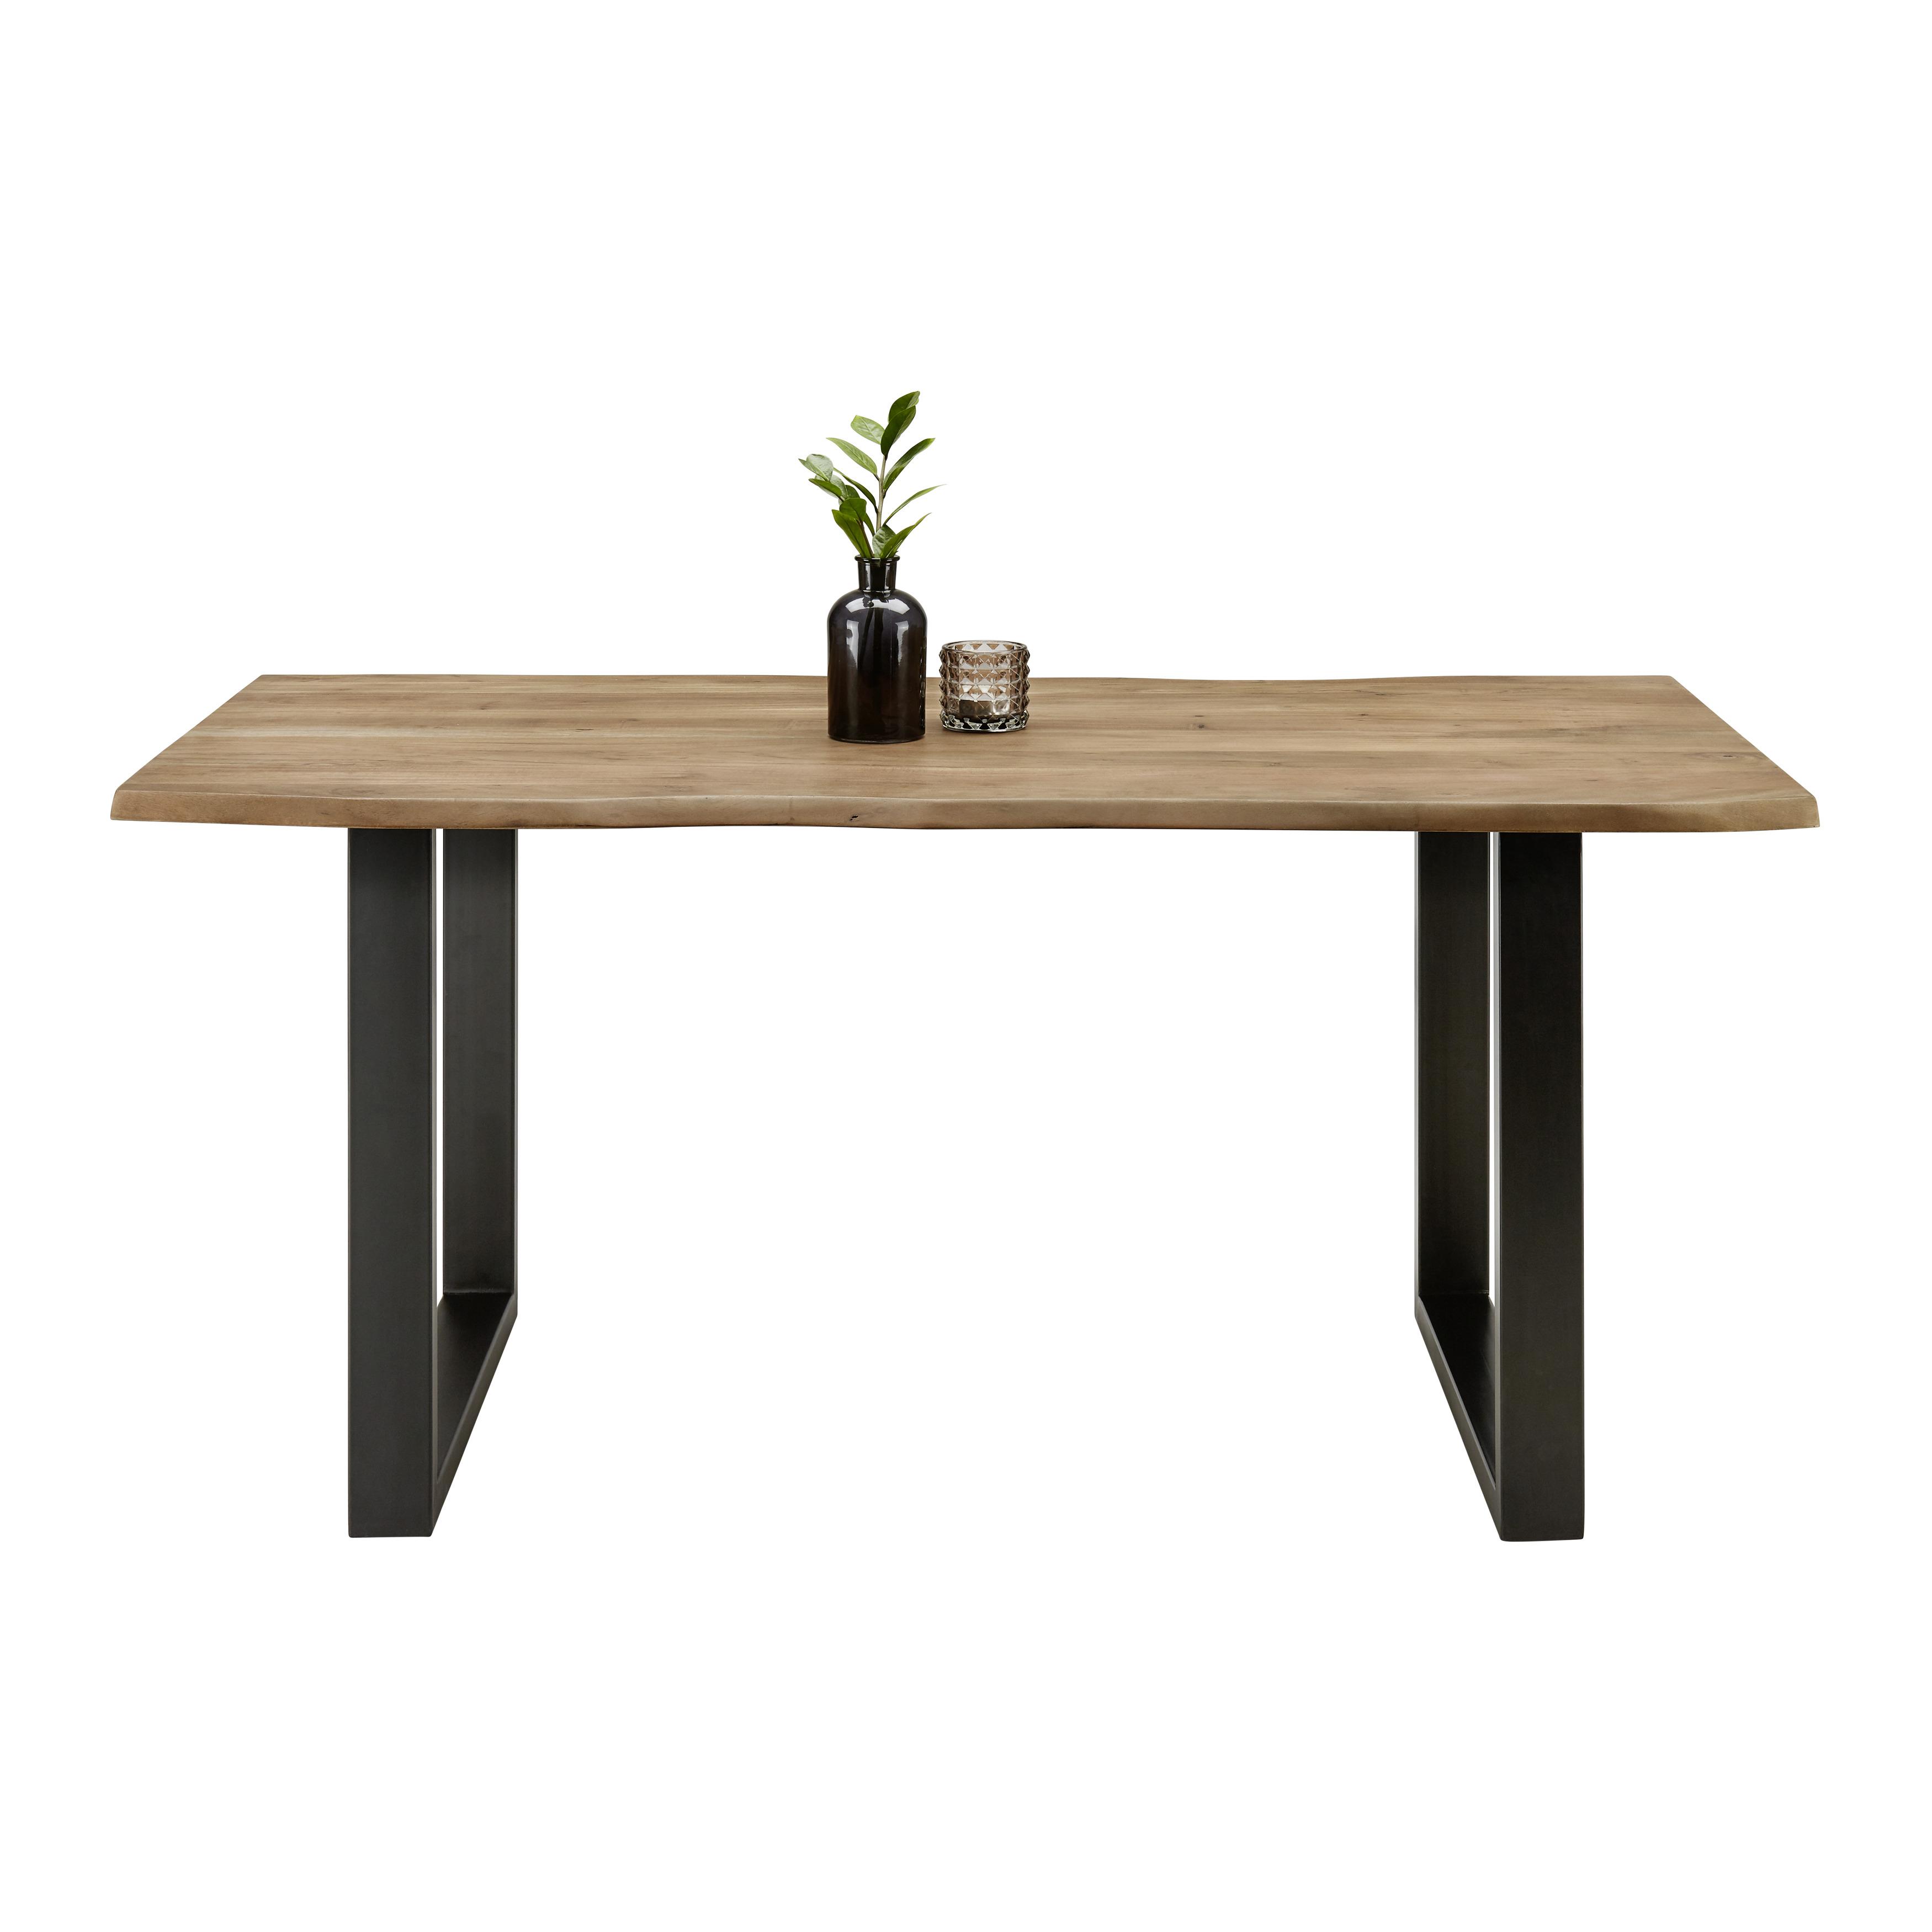 Jídelní Stůl Z Masivu Malmo 160x85 Cm - černá/barvy akácie, Moderní, kov/dřevo (160/85/76cm) - Modern Living